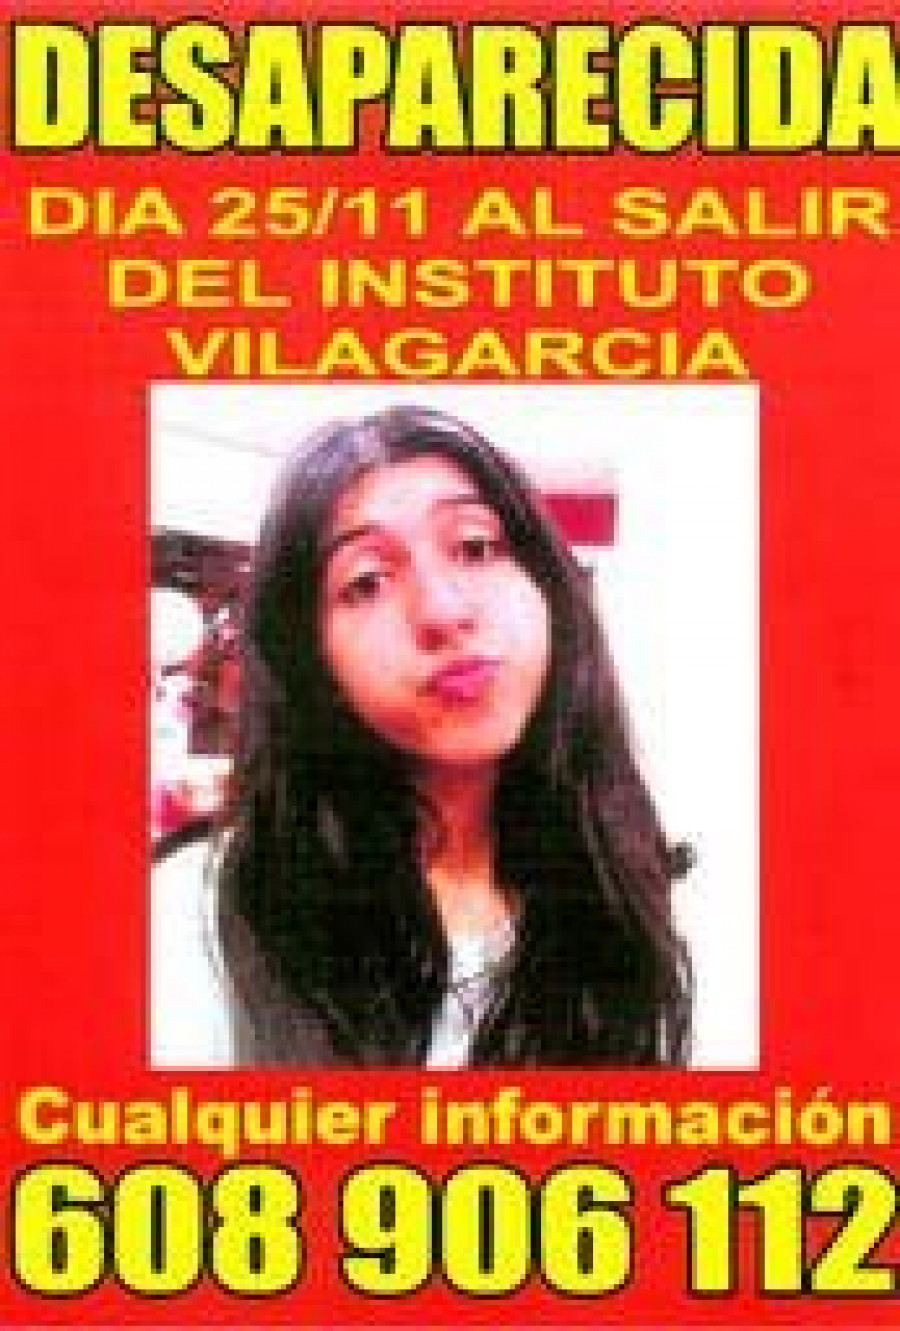 Buscan a una menor desaparecida en Vilagarcía